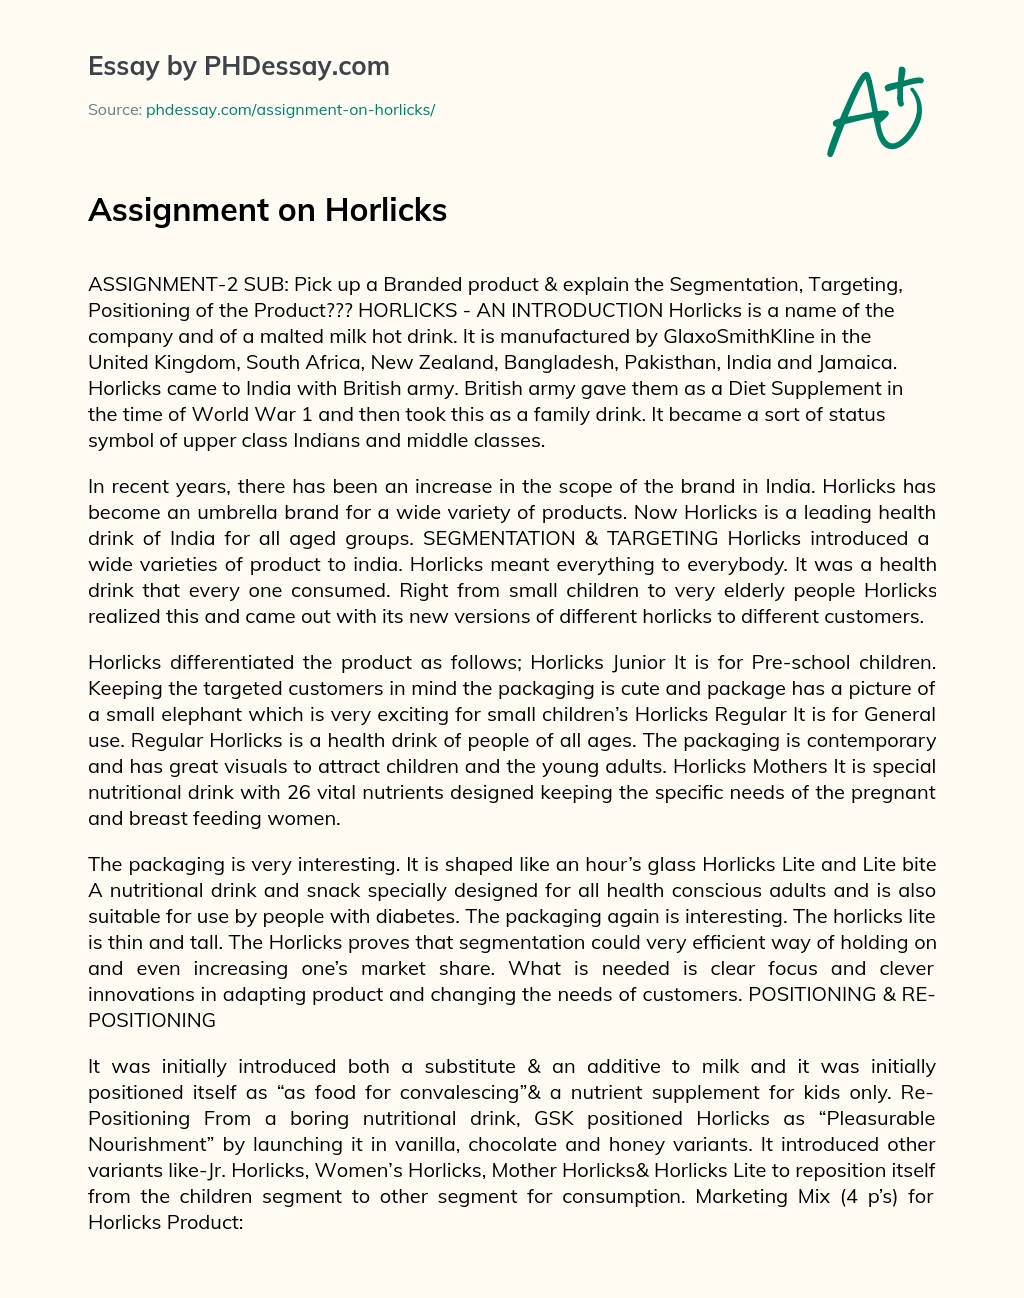 Assignment on Horlicks essay